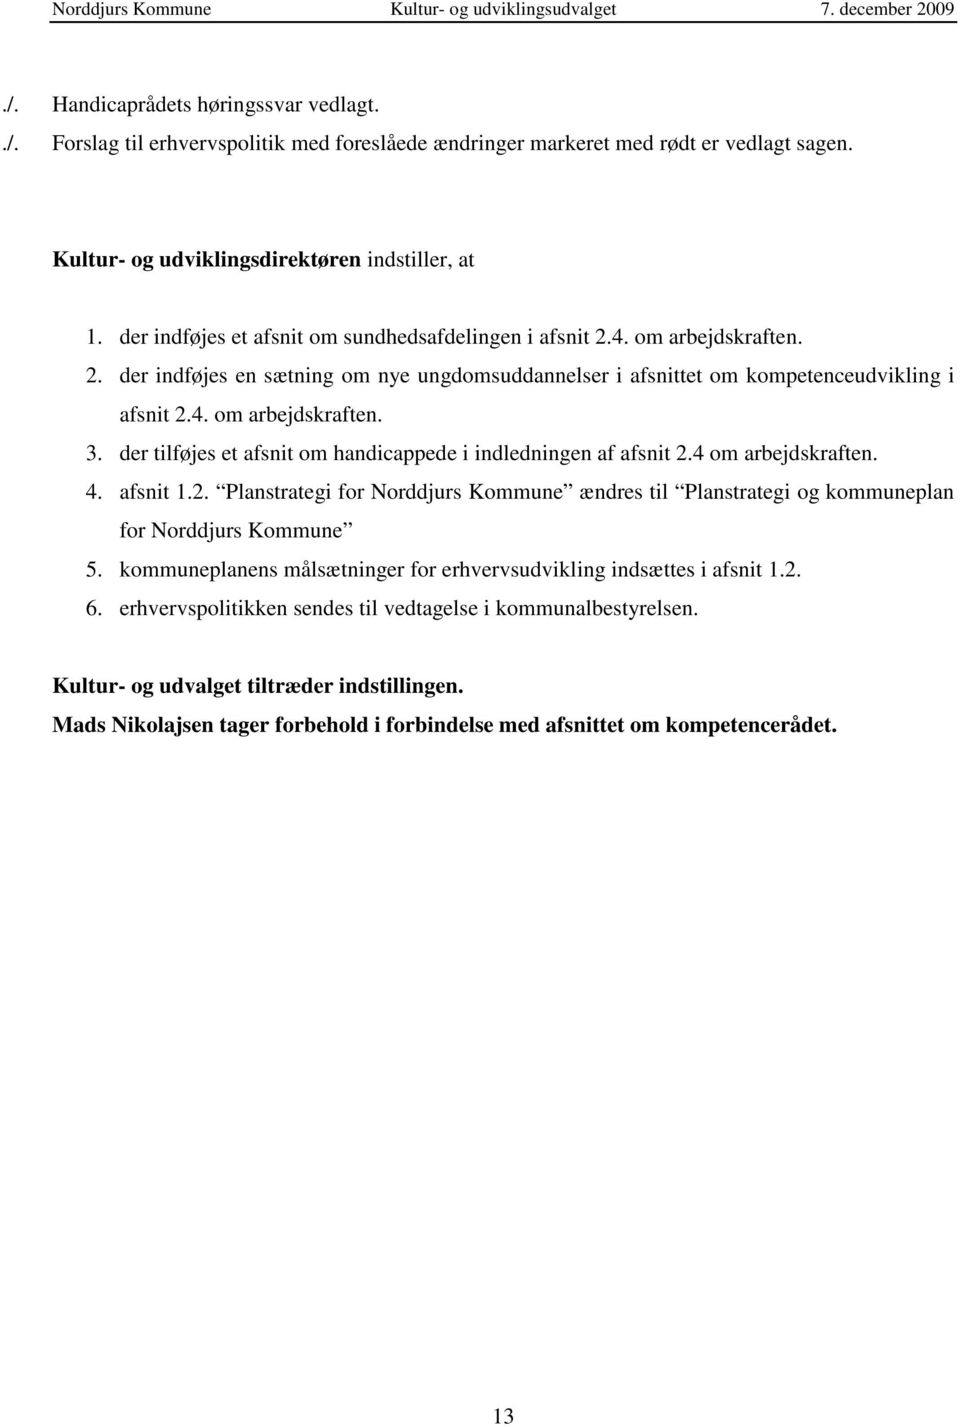 der tilføjes et afsnit om handicappede i indledningen af afsnit 2.4 om arbejdskraften. 4. afsnit 1.2. Planstrategi for Norddjurs Kommune ændres til Planstrategi og kommuneplan for Norddjurs Kommune 5.